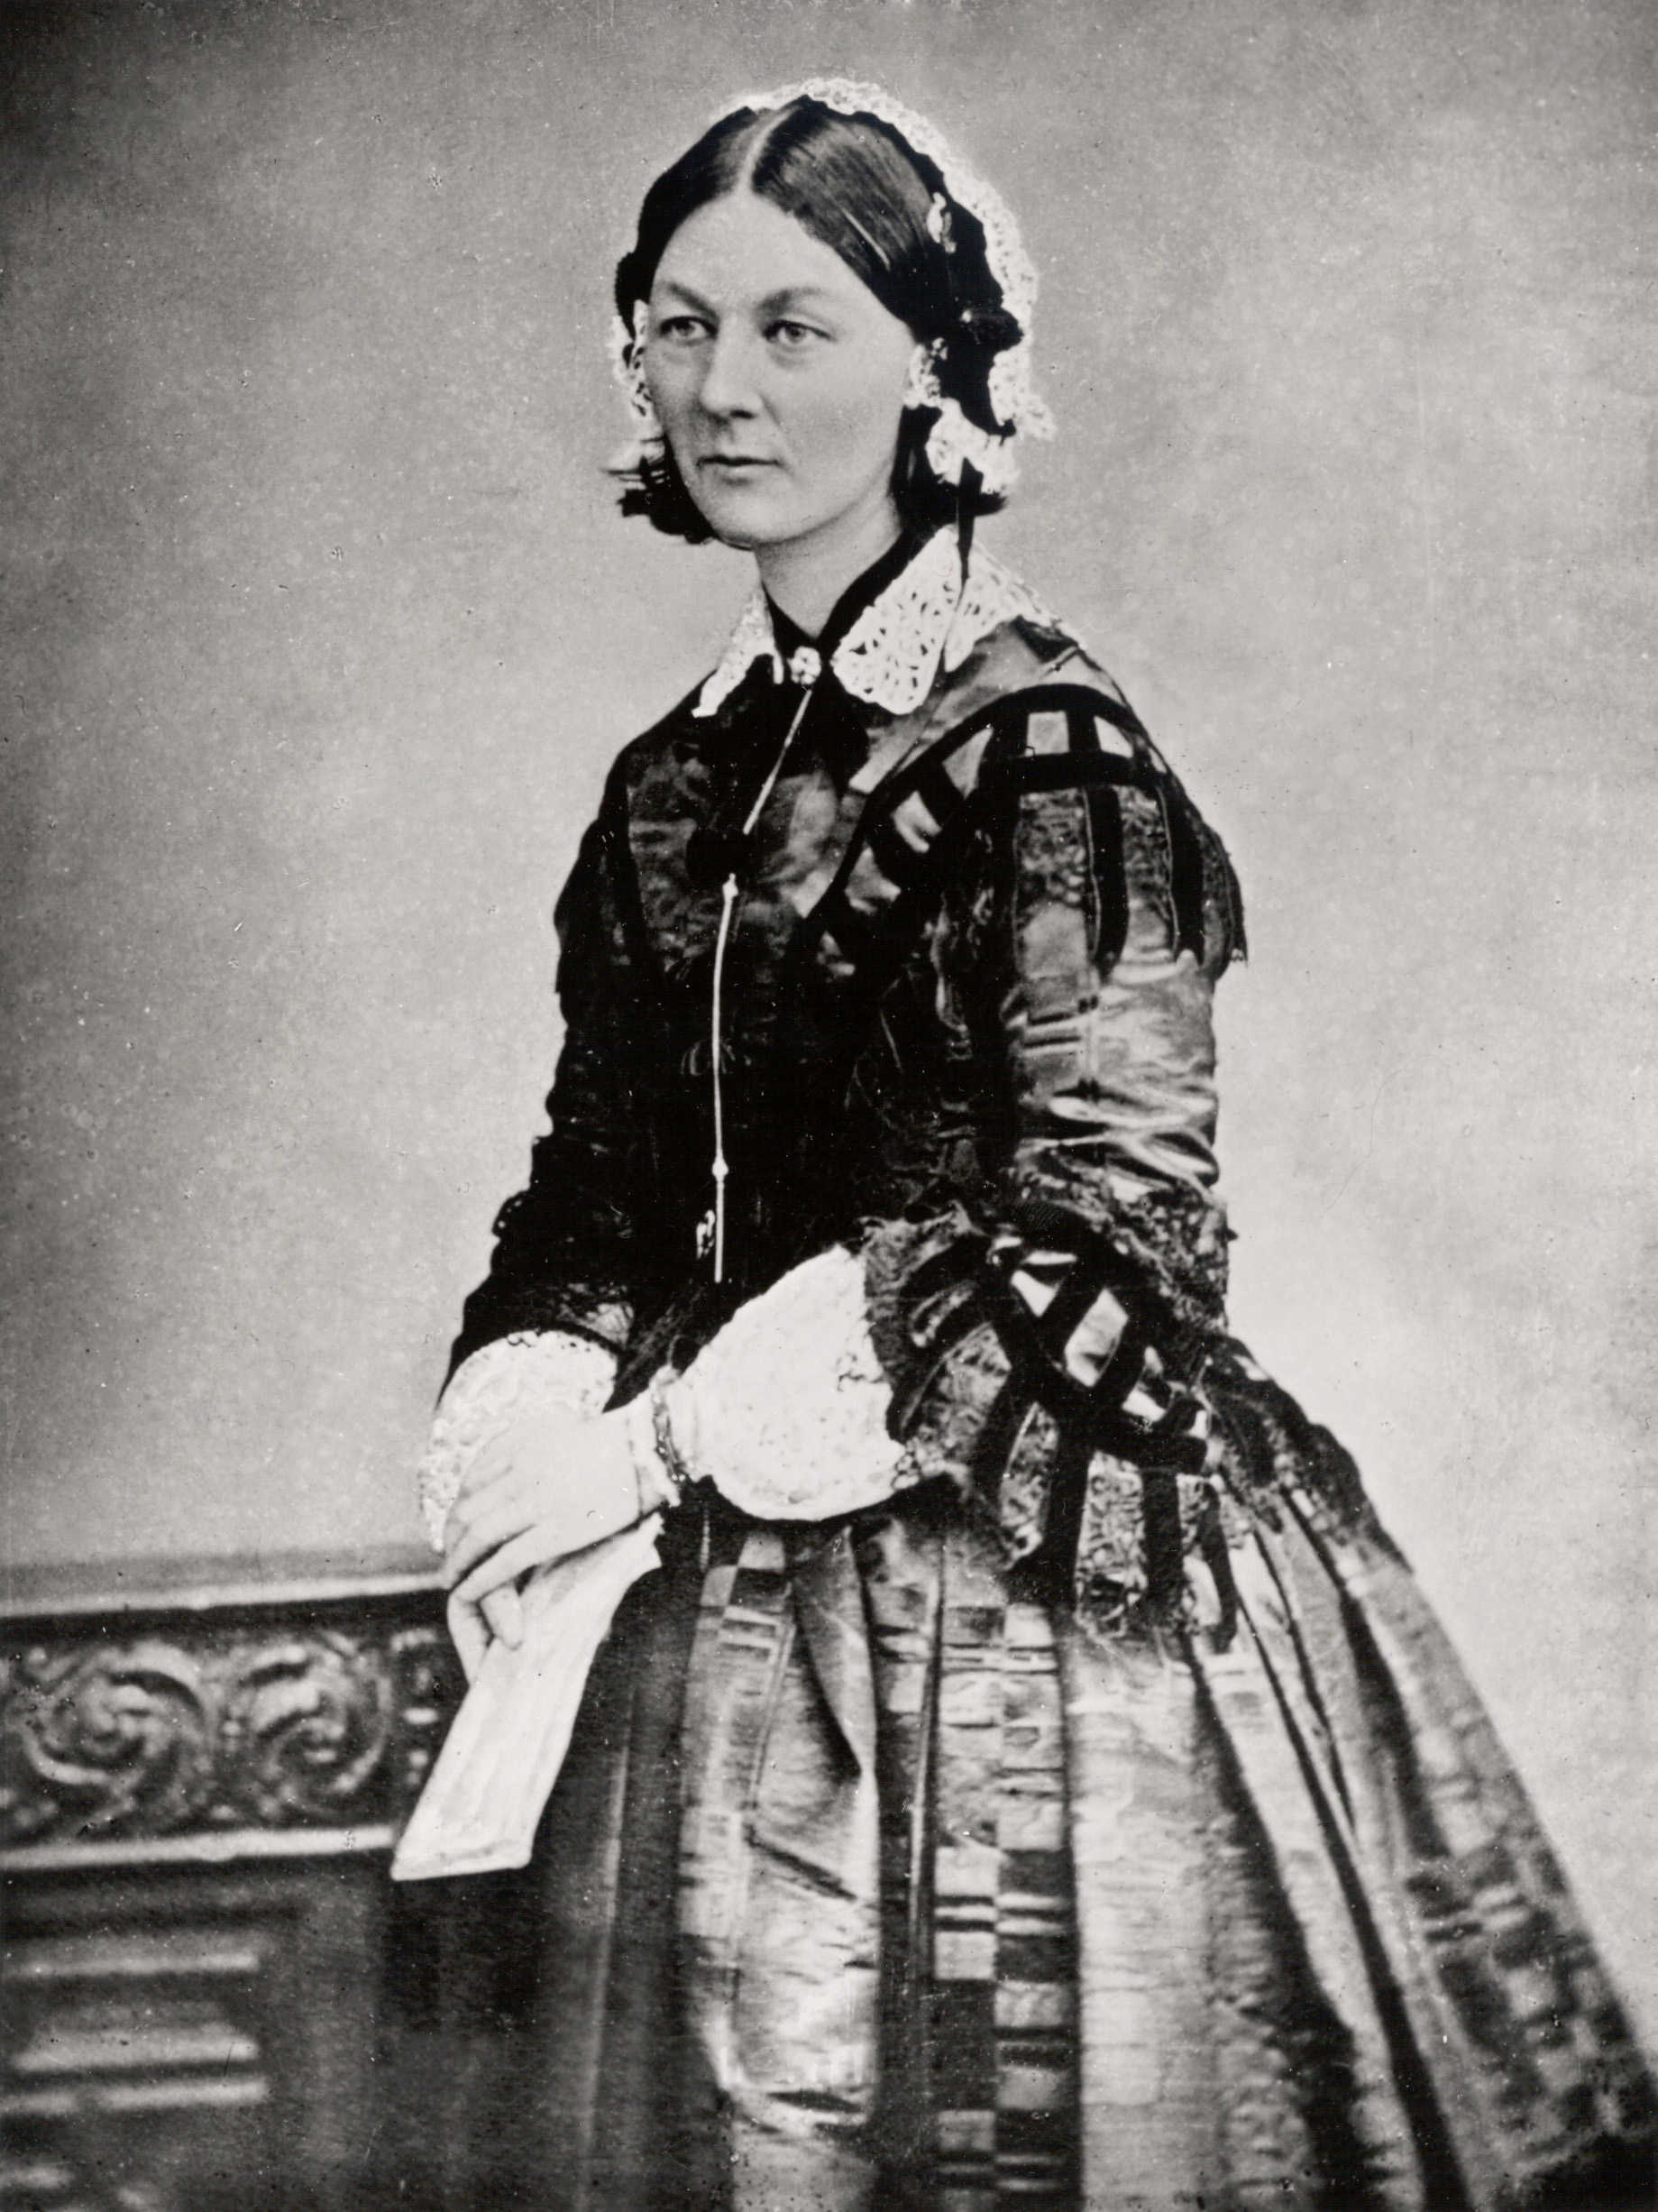 Florence Nightingale, around 1860.